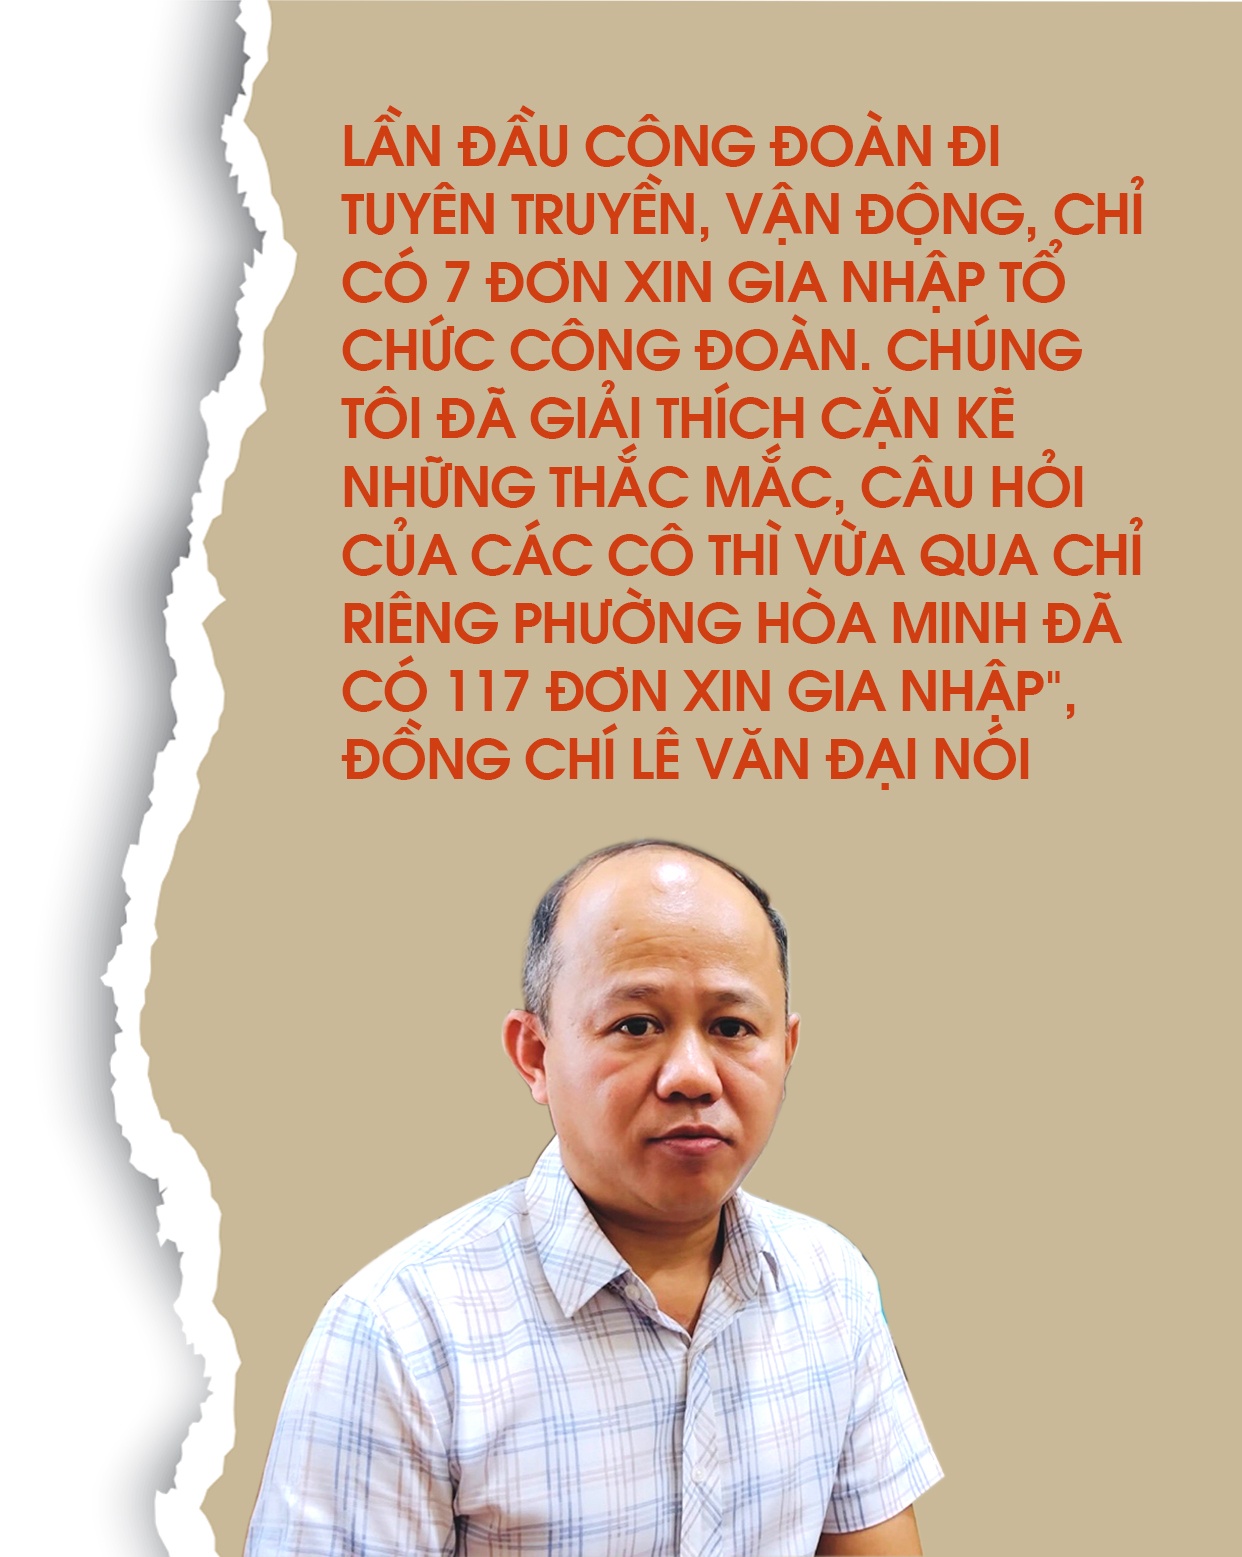 LĐLĐ TP. Đà Nẵng: Tập trung thành lập các Nghiệp đoàn